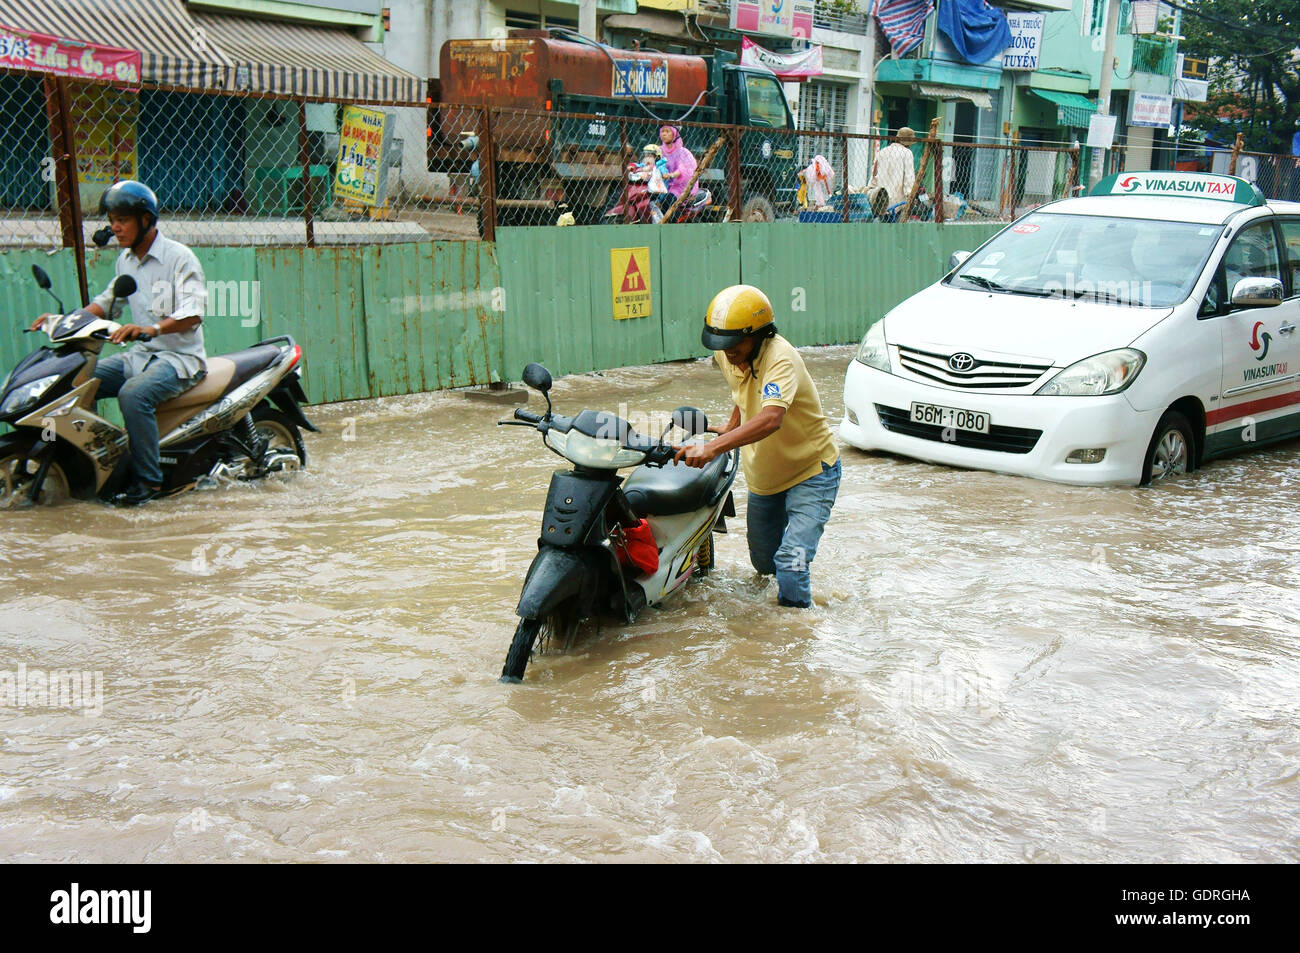 Gruppo del popolo vietnamita ride moto, biciclette in movimento su strada allagata dopo la pioggia Foto Stock